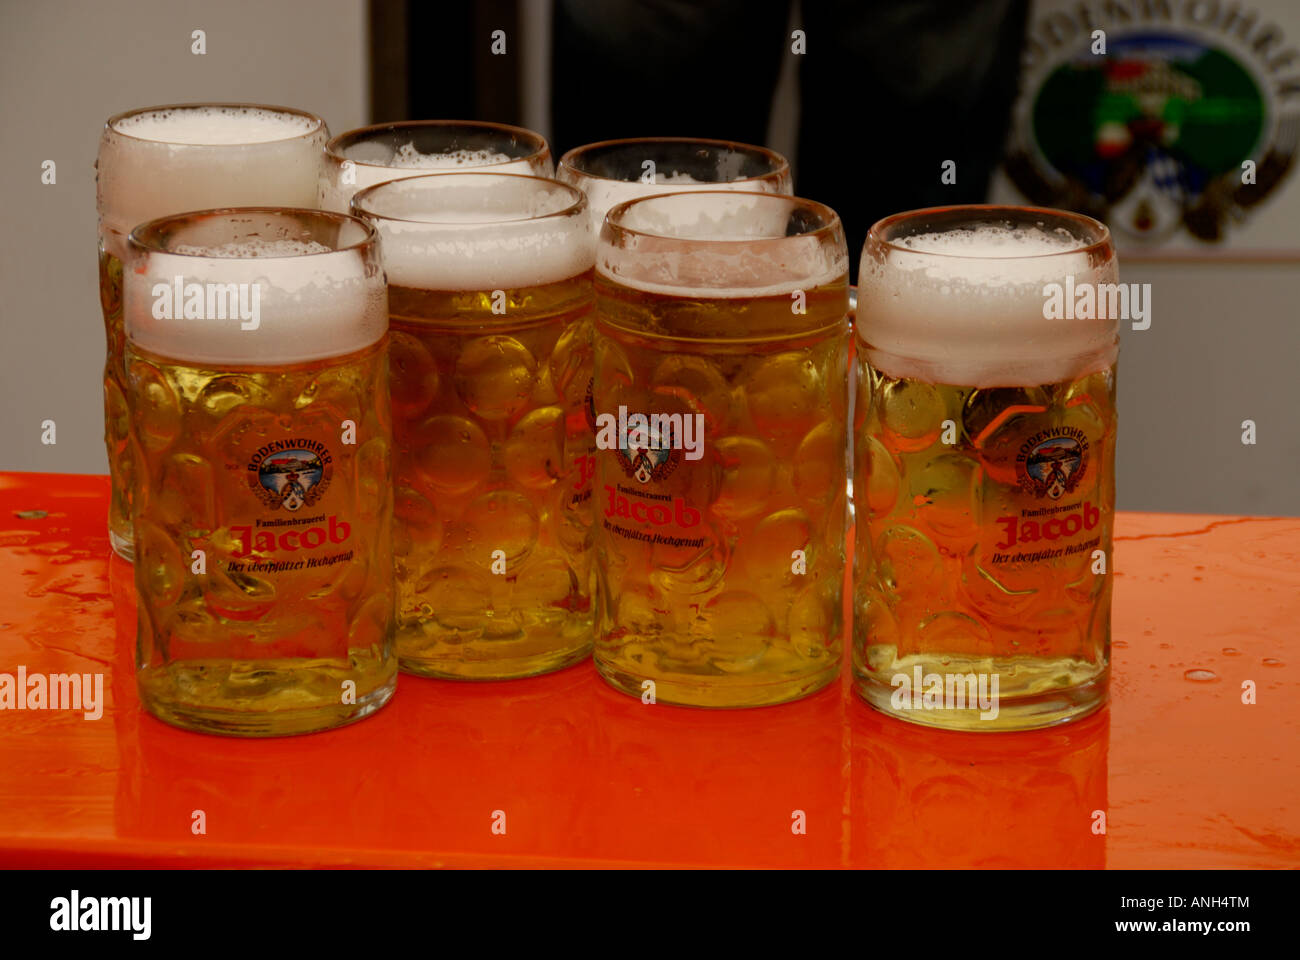 https://c8.alamy.com/comp/ANH4TM/german-beer-germany-ANH4TM.jpg